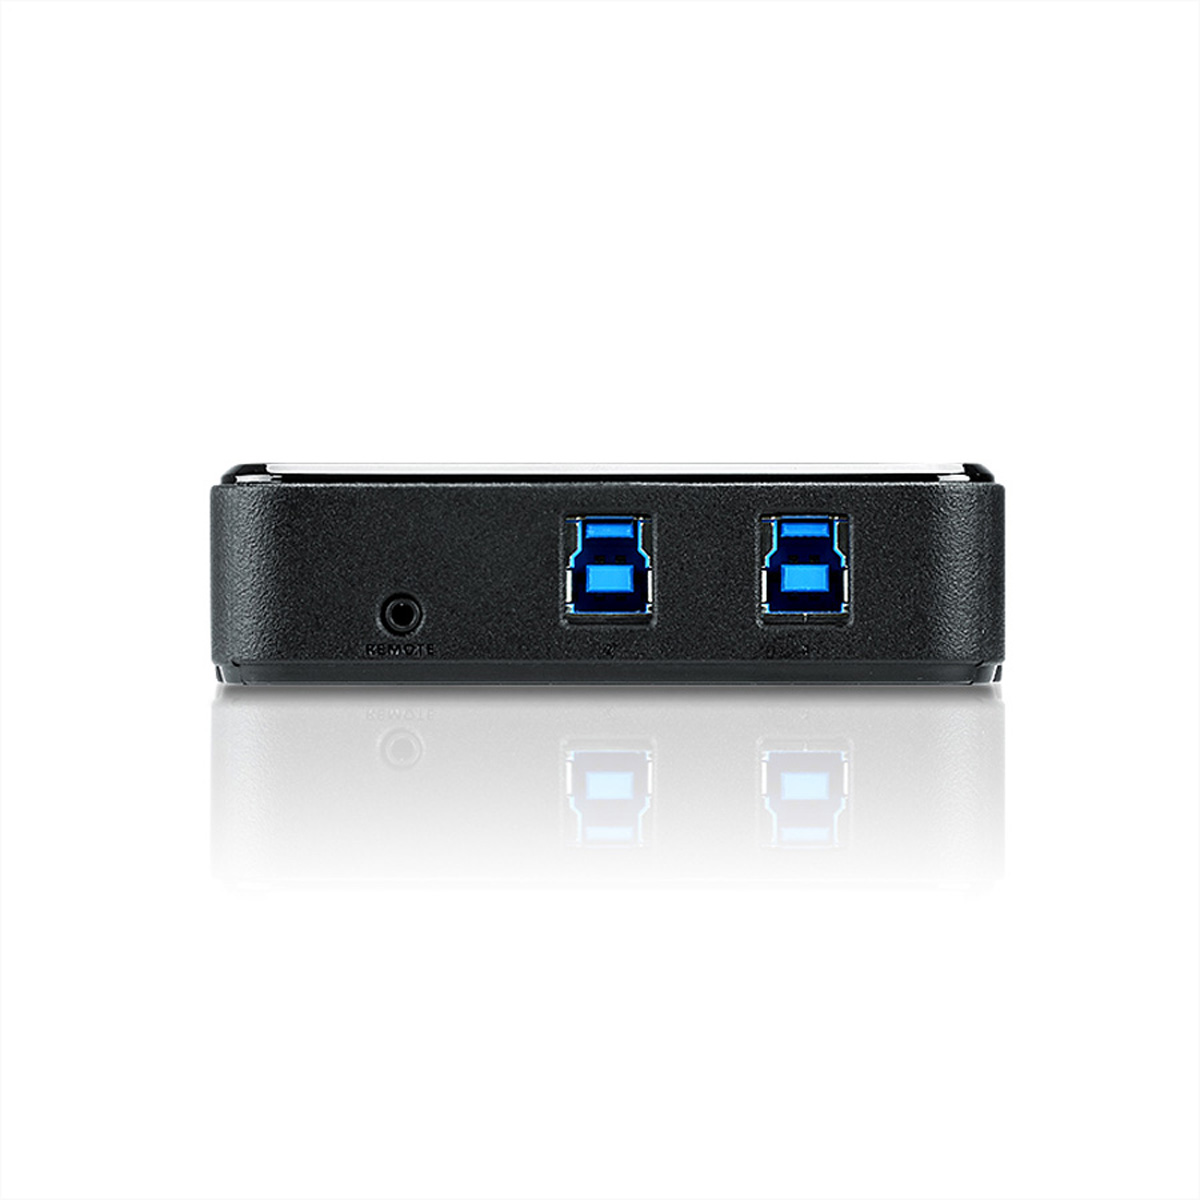 ATEN US234 USB 3.0-Peripheriegeräte-Switch mit 2 Ports, automatisch, Switchbox, schwarz